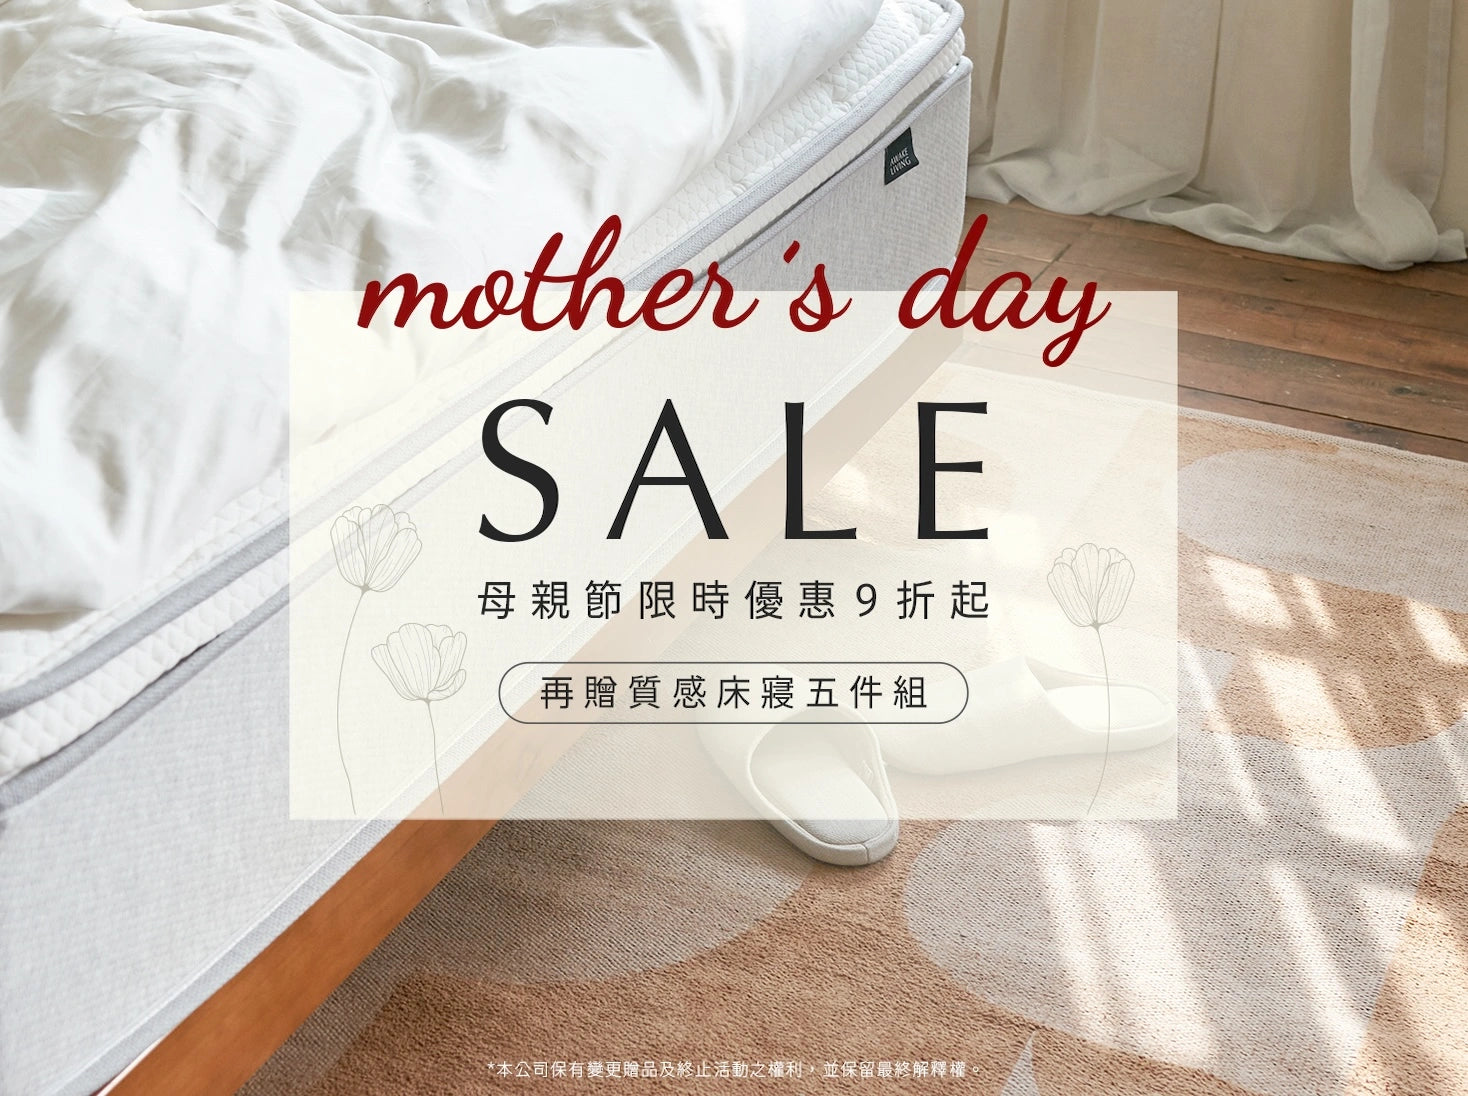 MOTHER'S DAY SALE - 活動主視覺橫幅照片手機版